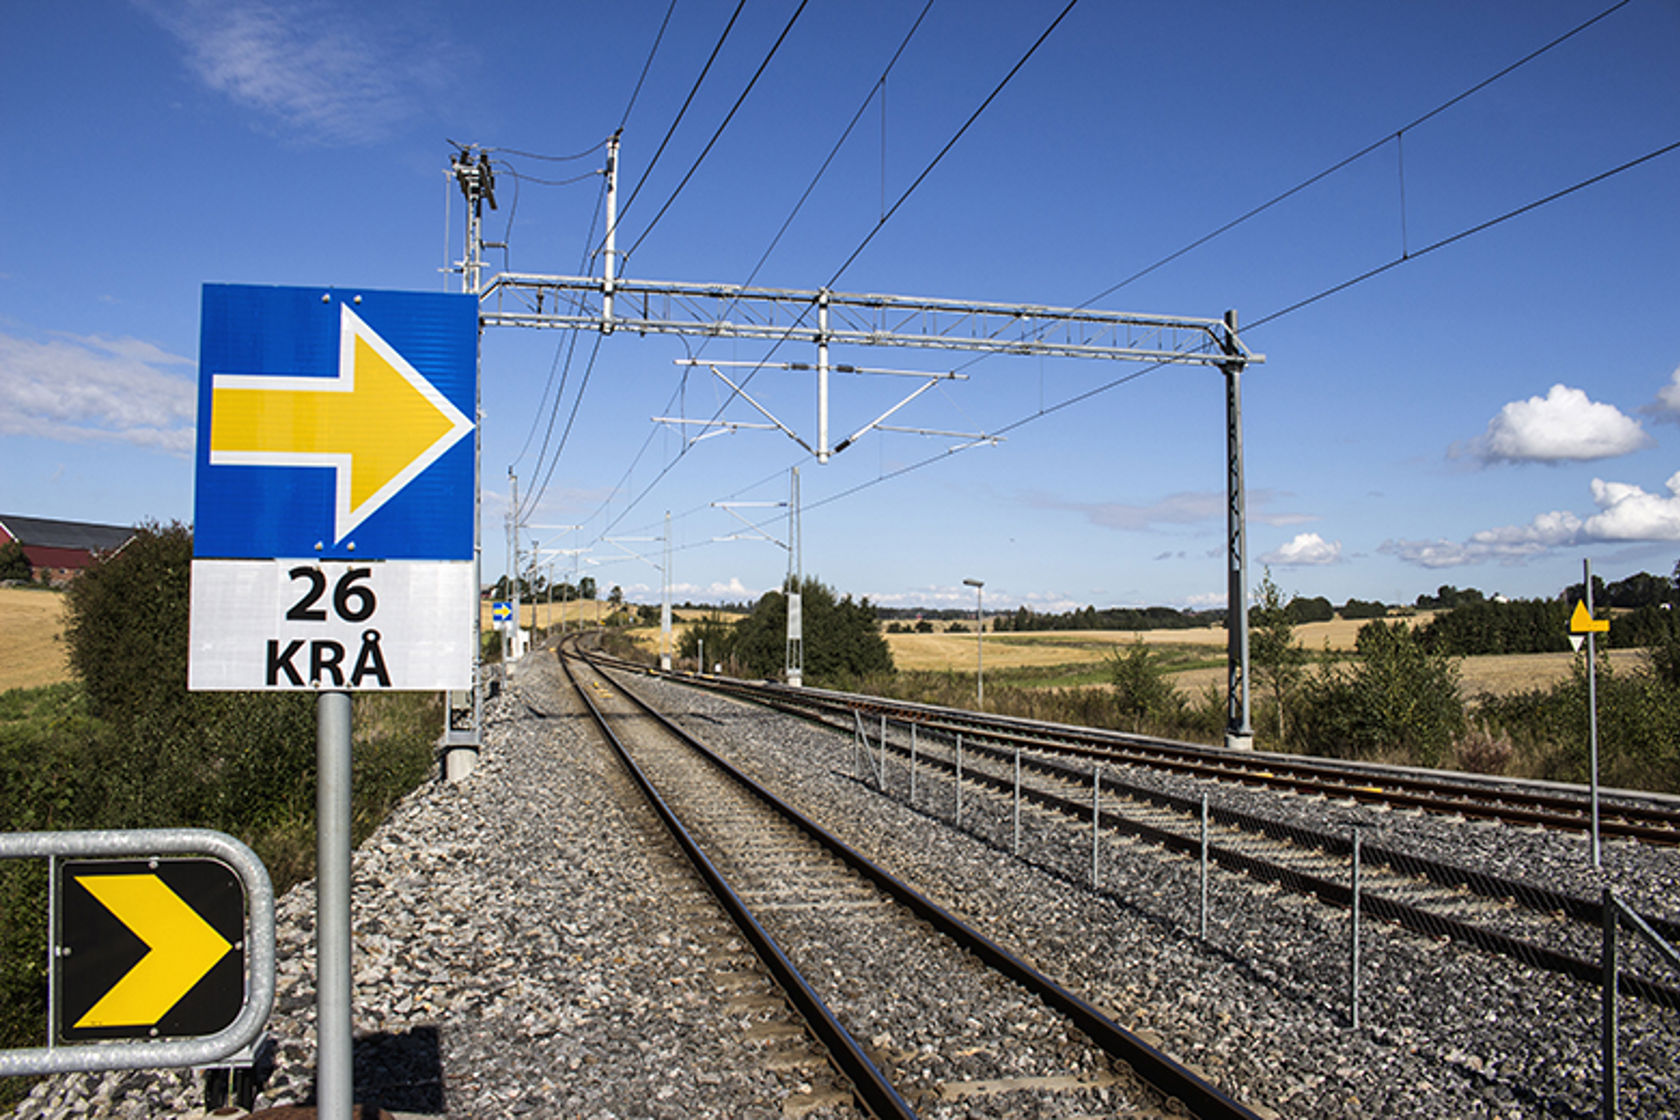 Jernbanespor og nytt ERTMS-skilt med gul pil.